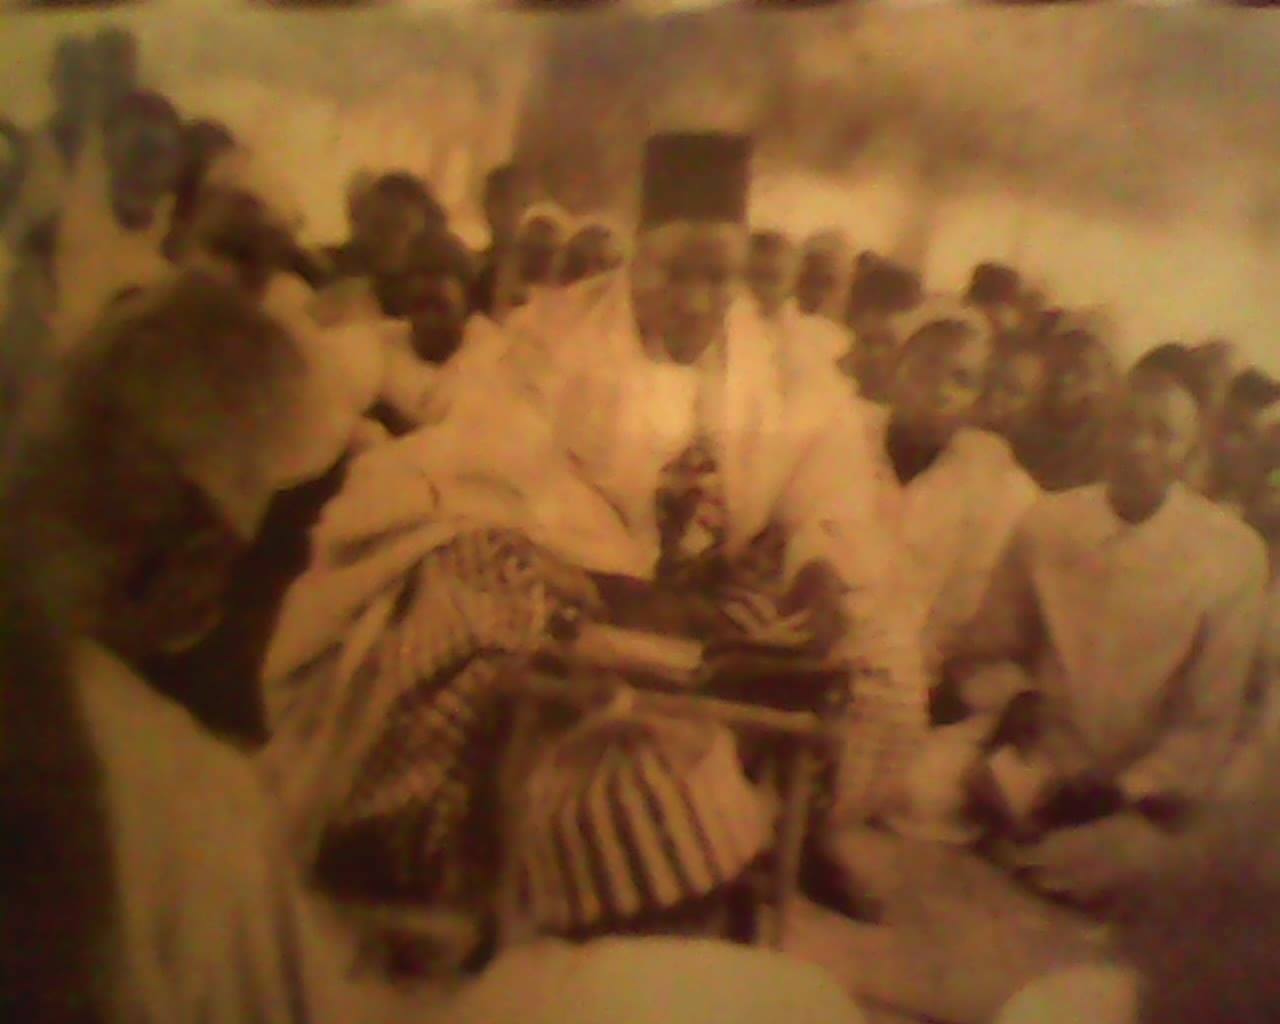 Les grandes dates de l'histoire d'El Hadj Amadou Déme de Sokone